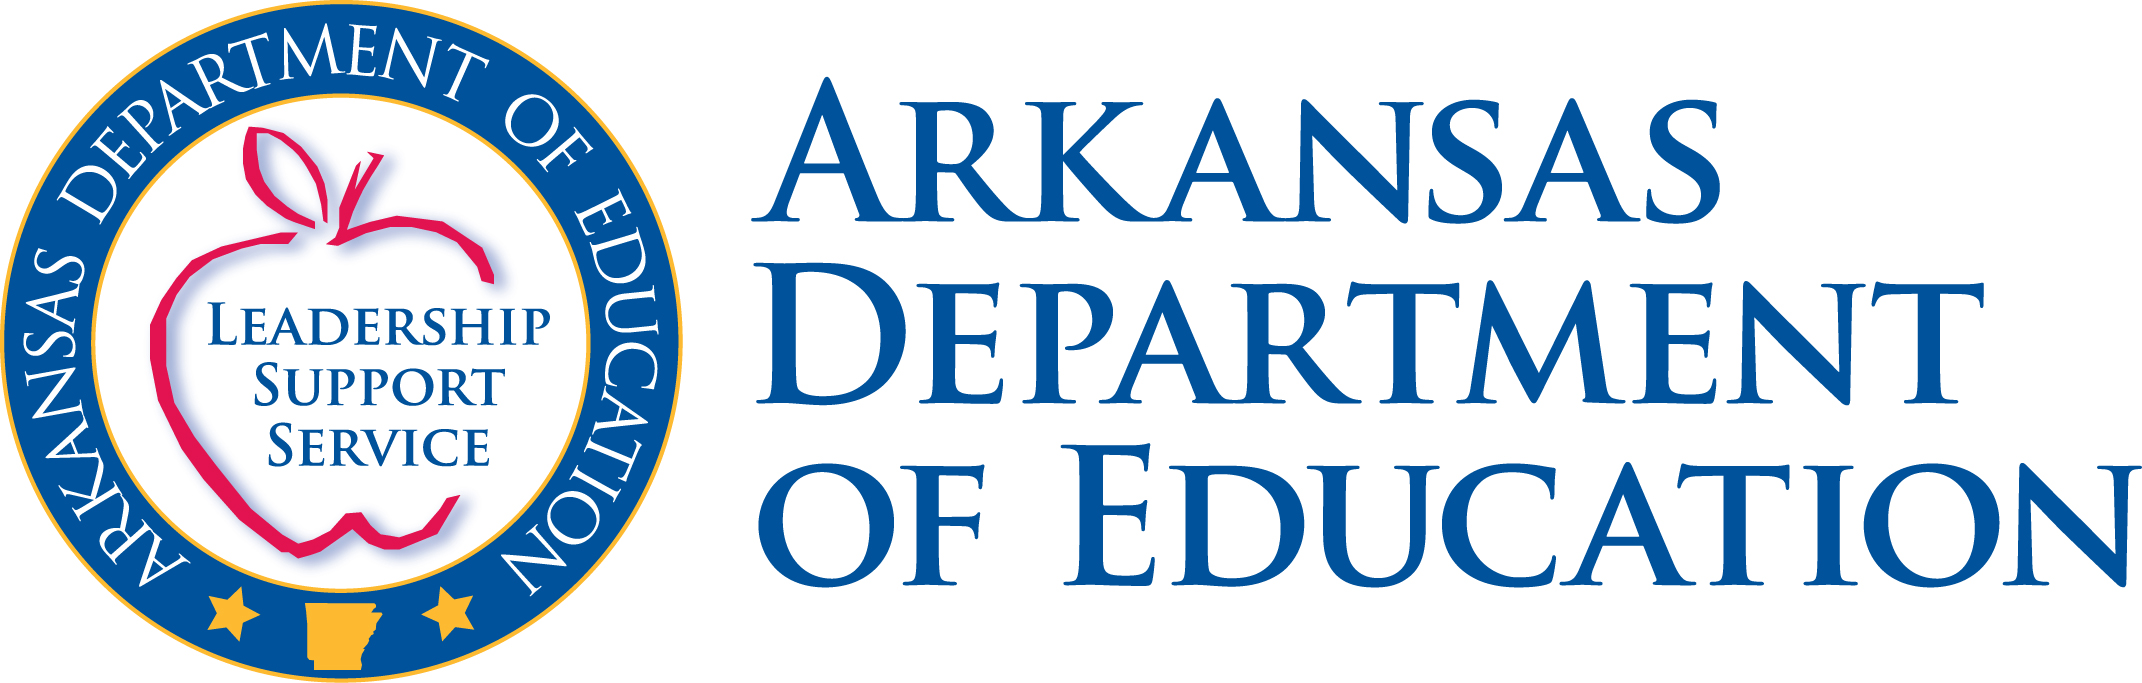 ArkansasED.org